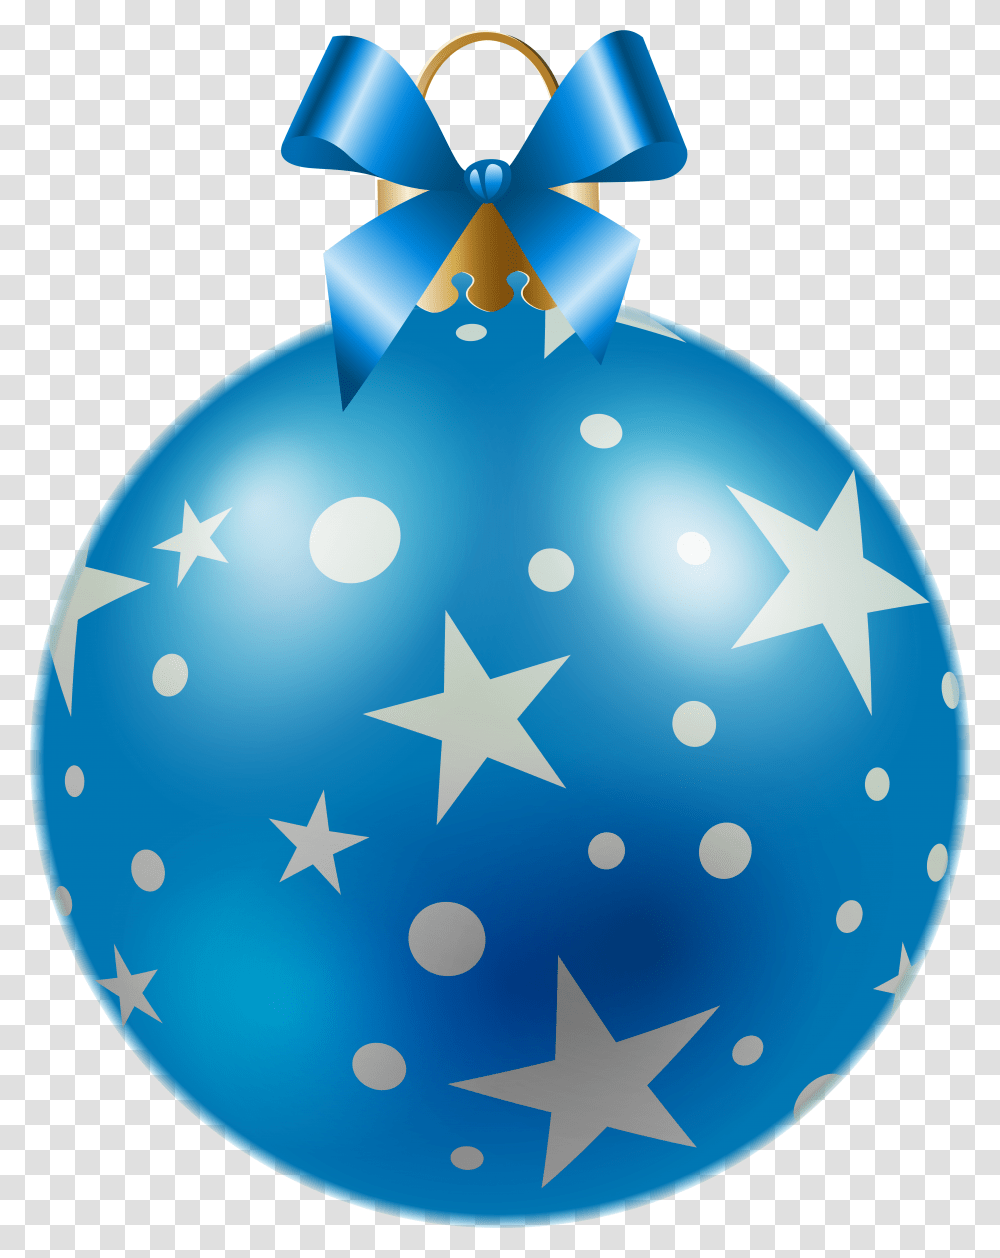 Green Christmas Ribbon Cores Da Bandeira Do Estado De Sergipe, Ornament, Star Symbol, Ball Transparent Png